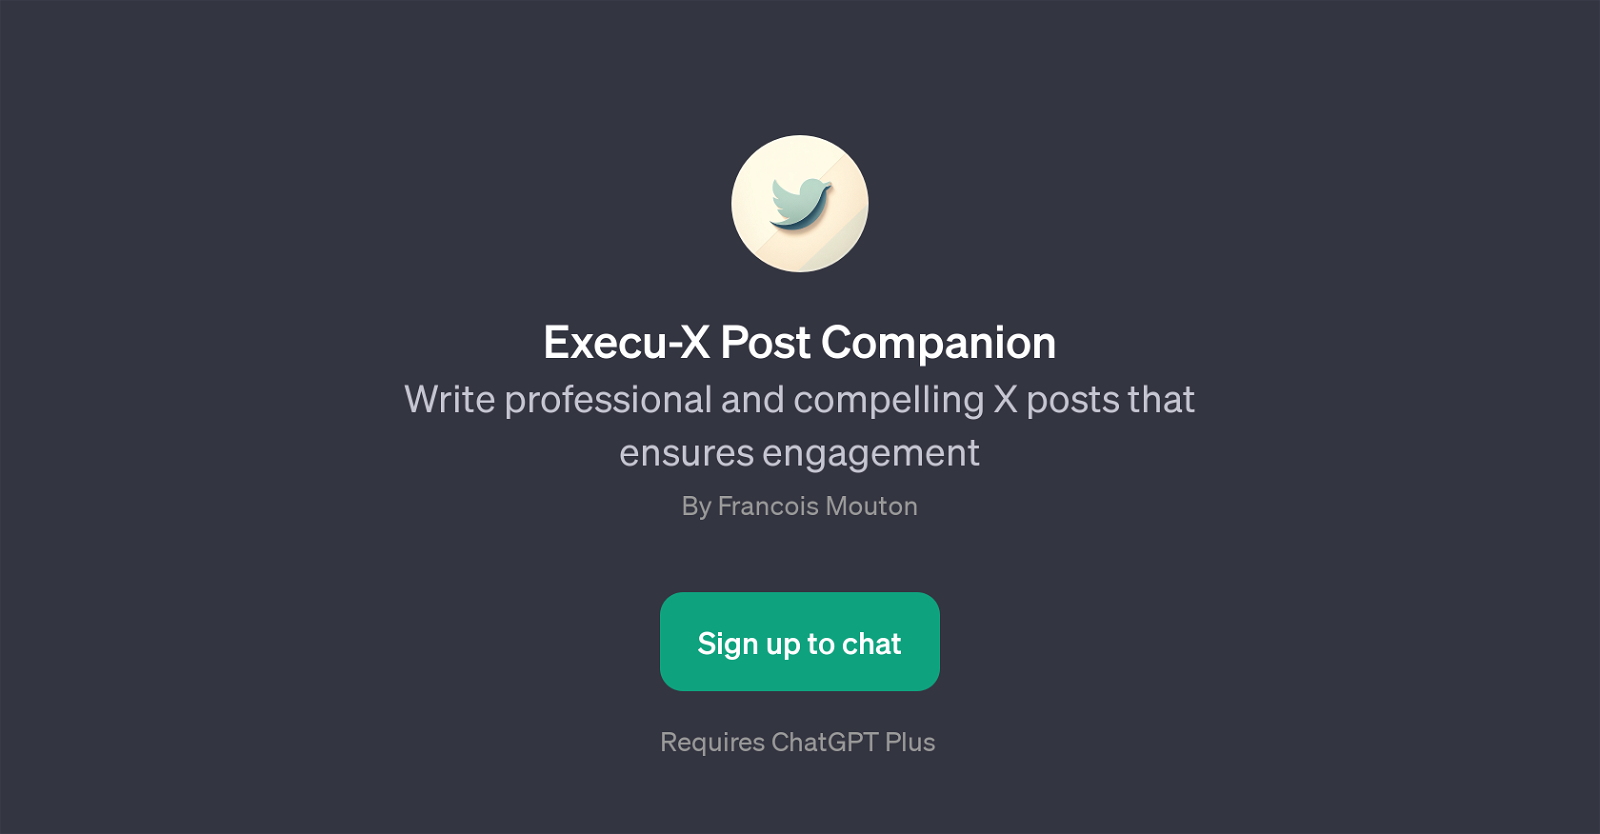 Execu-X Post Companion website